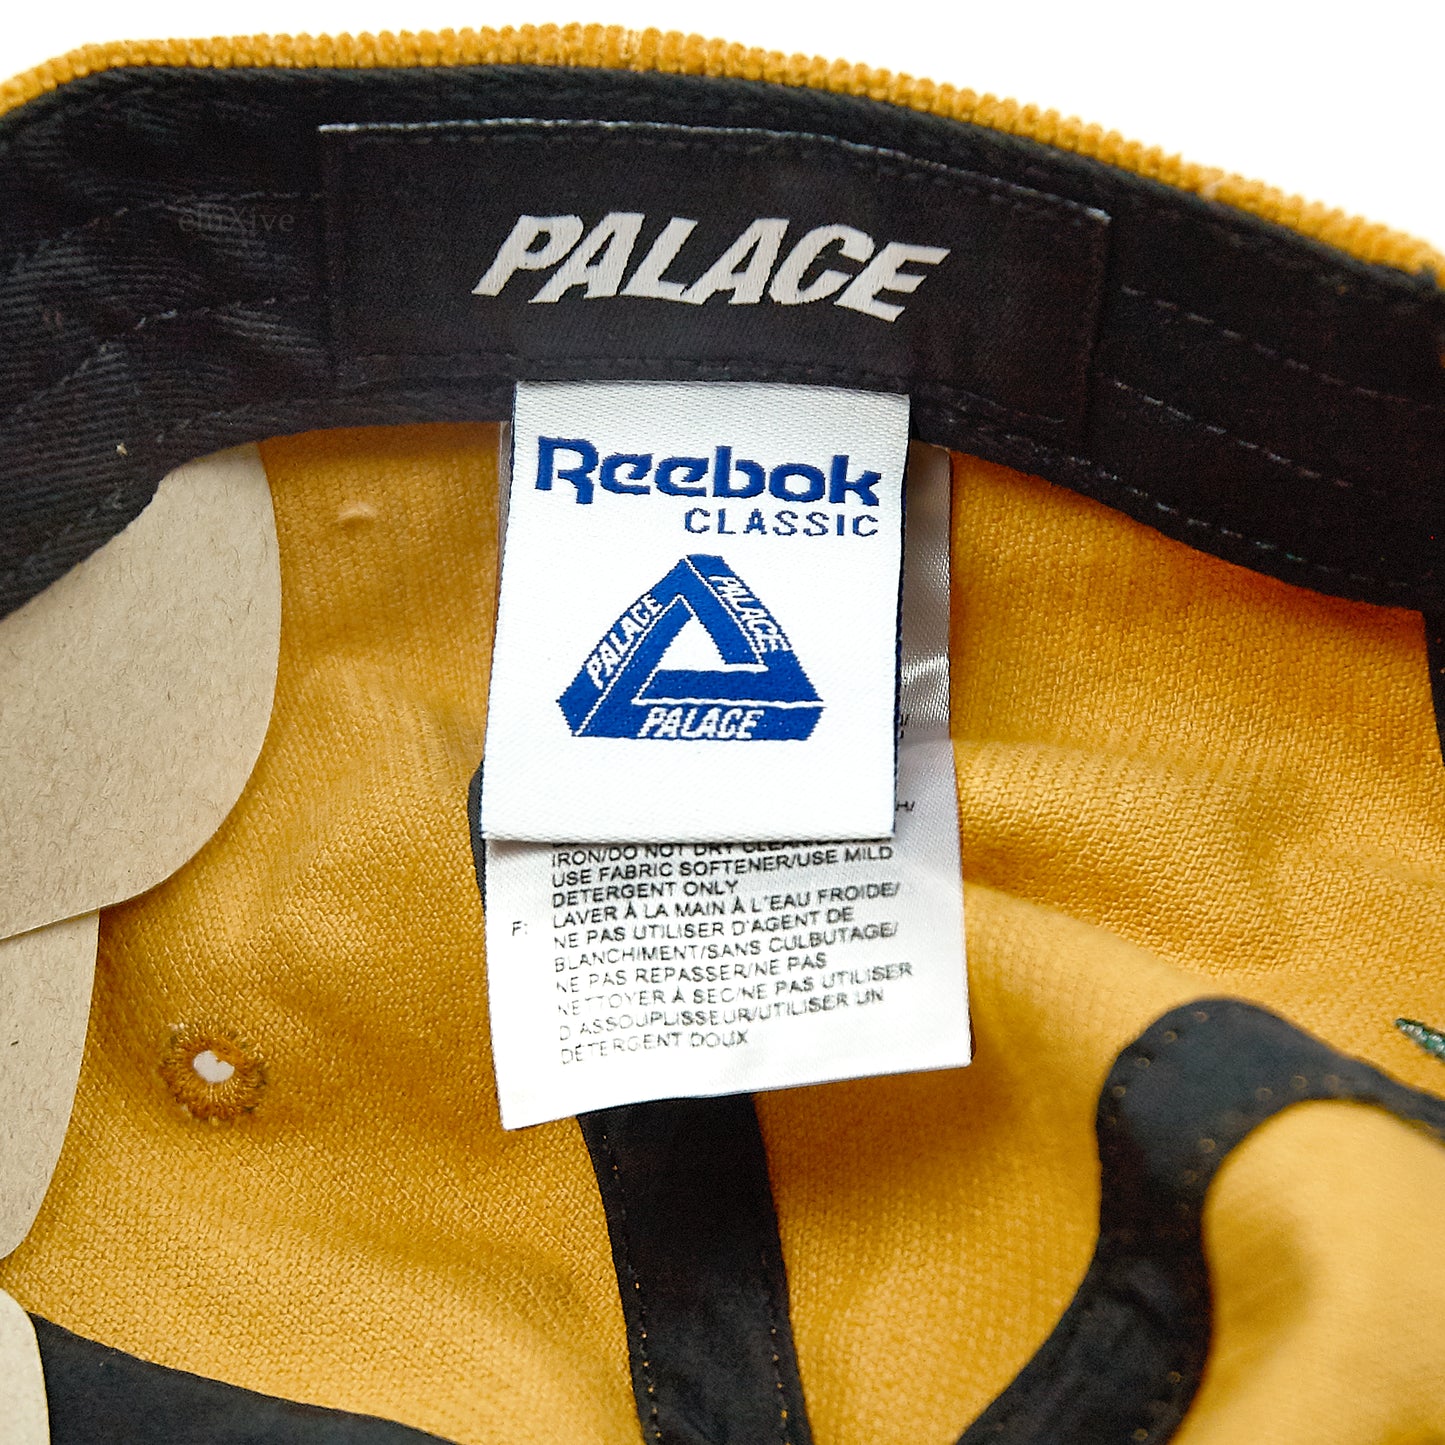 Palace x Reebok - Wreath Logo Corduroy Hat (Tan)